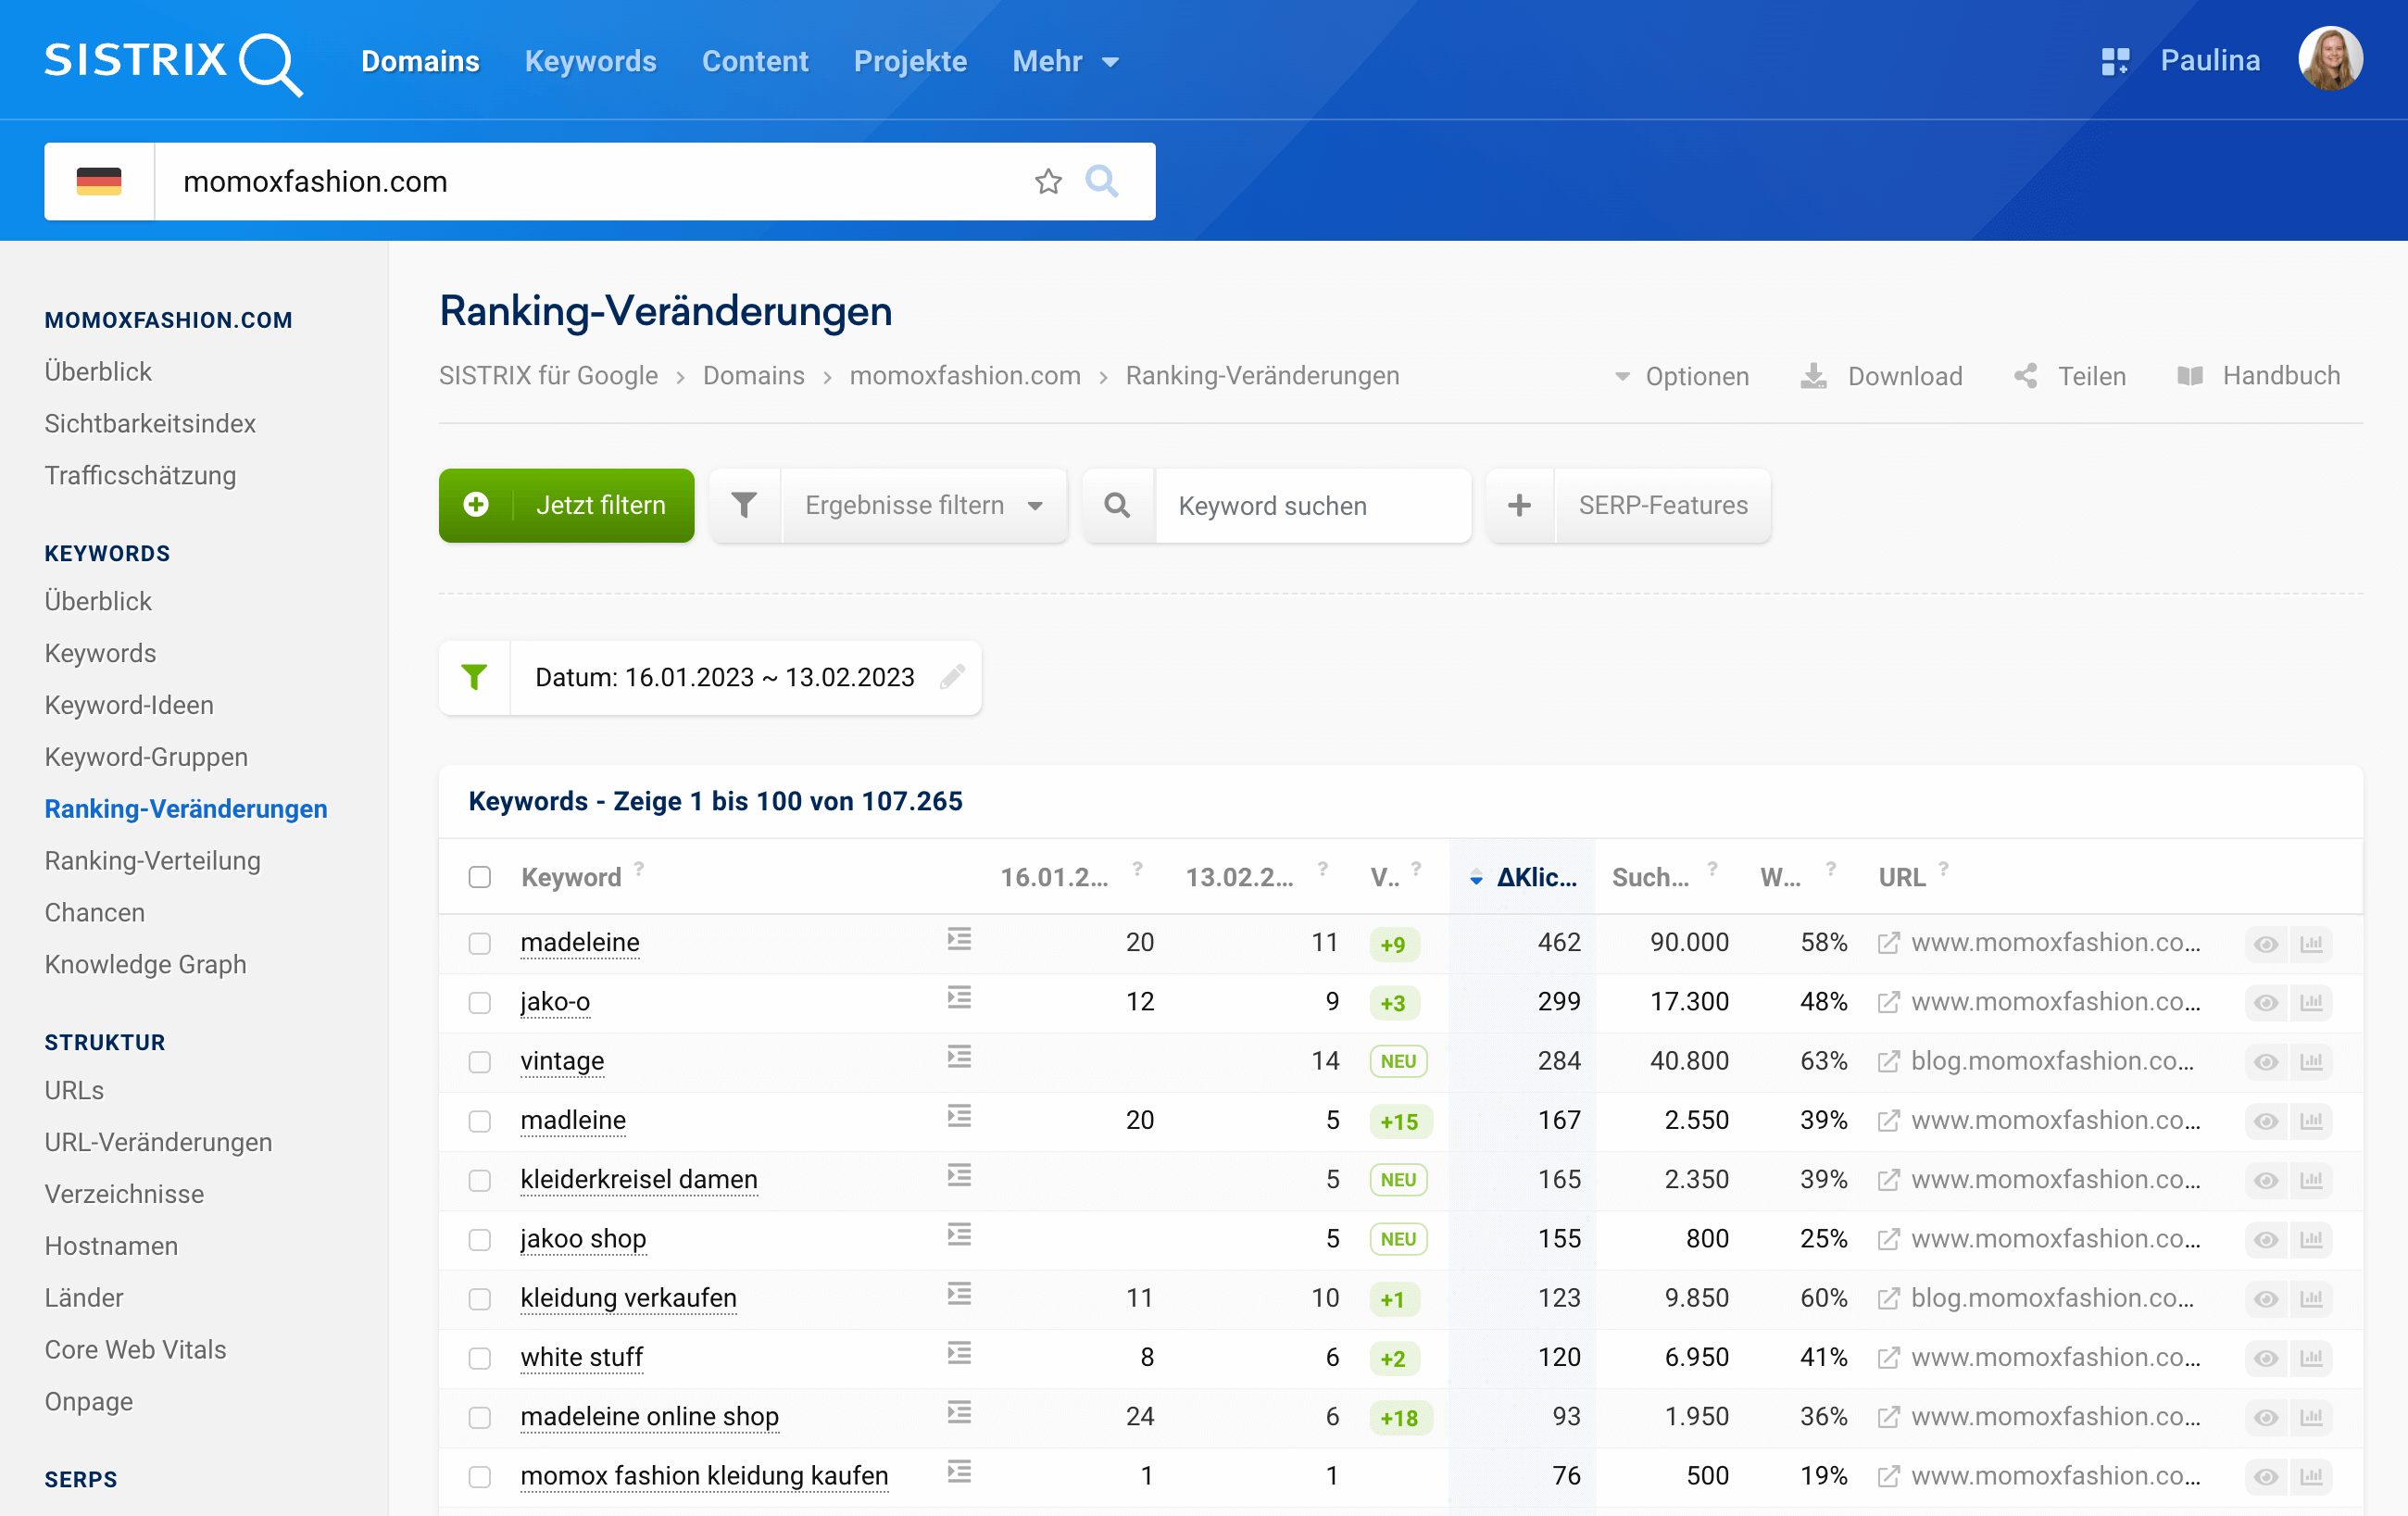 Die Ranking-Veränderungen der Domain momoxfashion.com vom 16.01.2023 im Vergleich zum 13.02.2023.